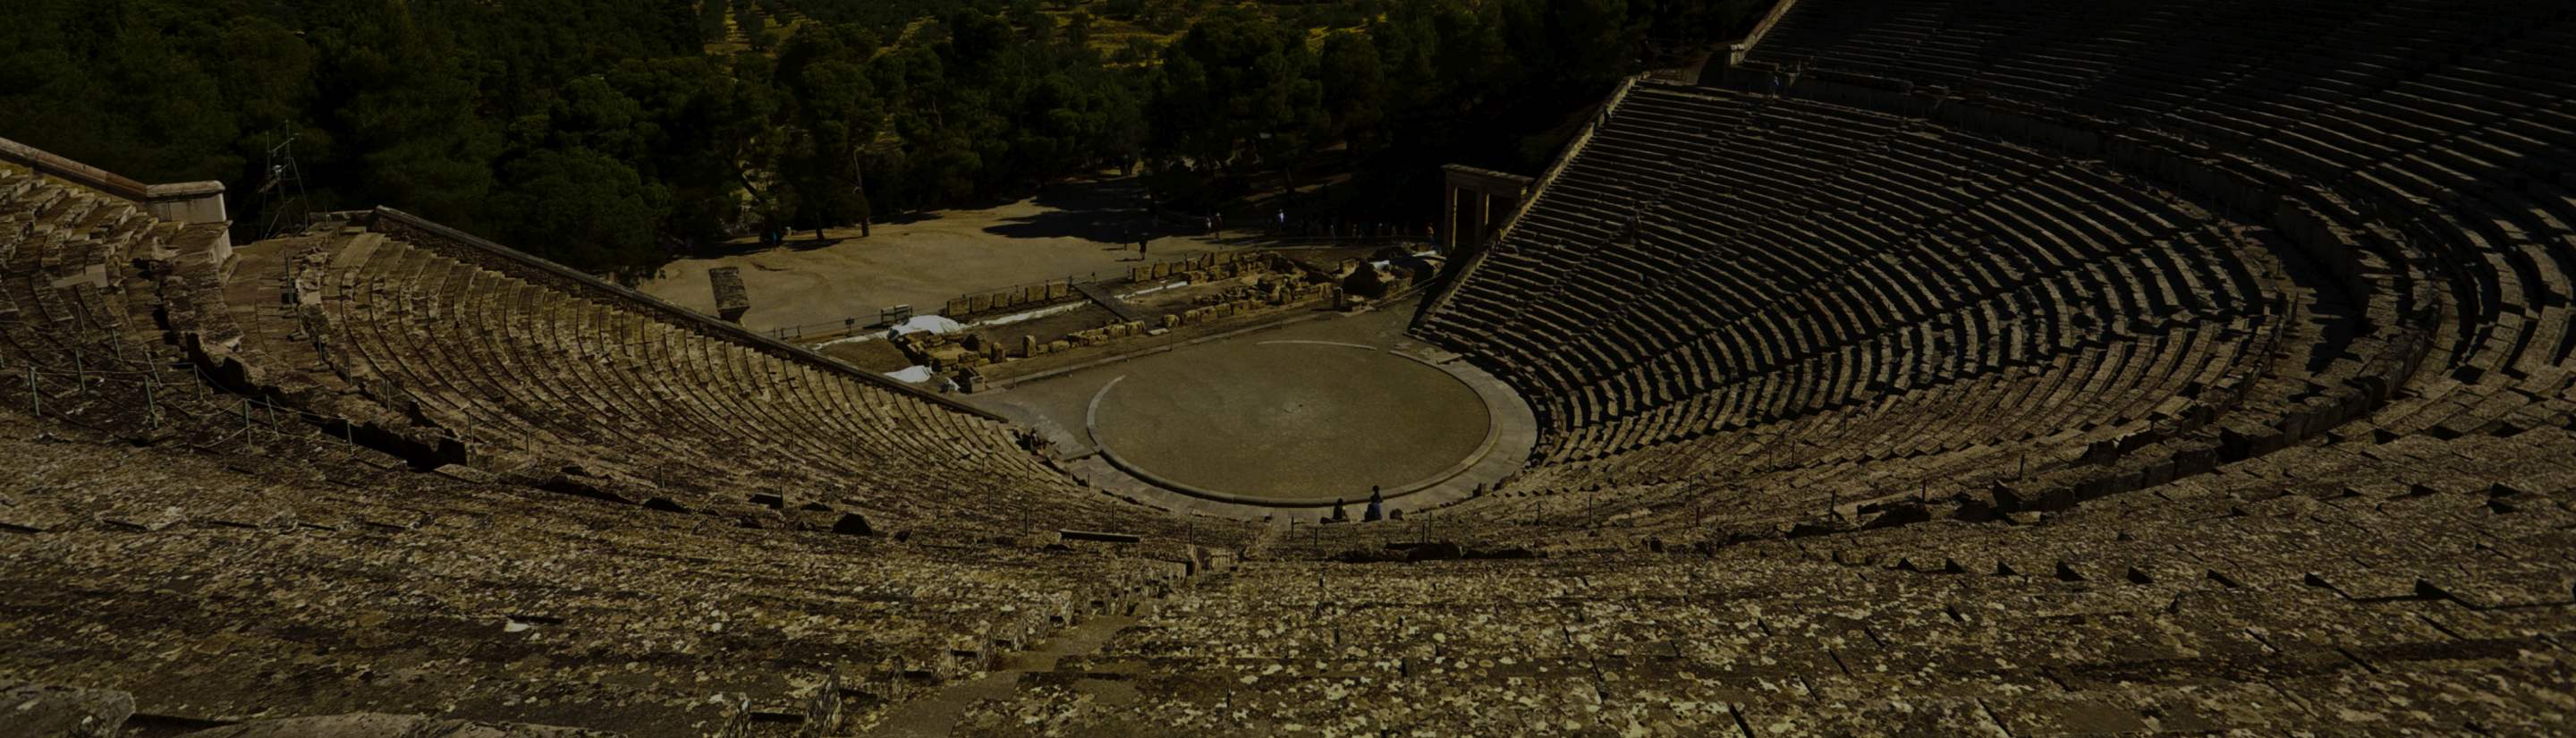 Griechisches Epidaurus Amphietheater in Griechenland